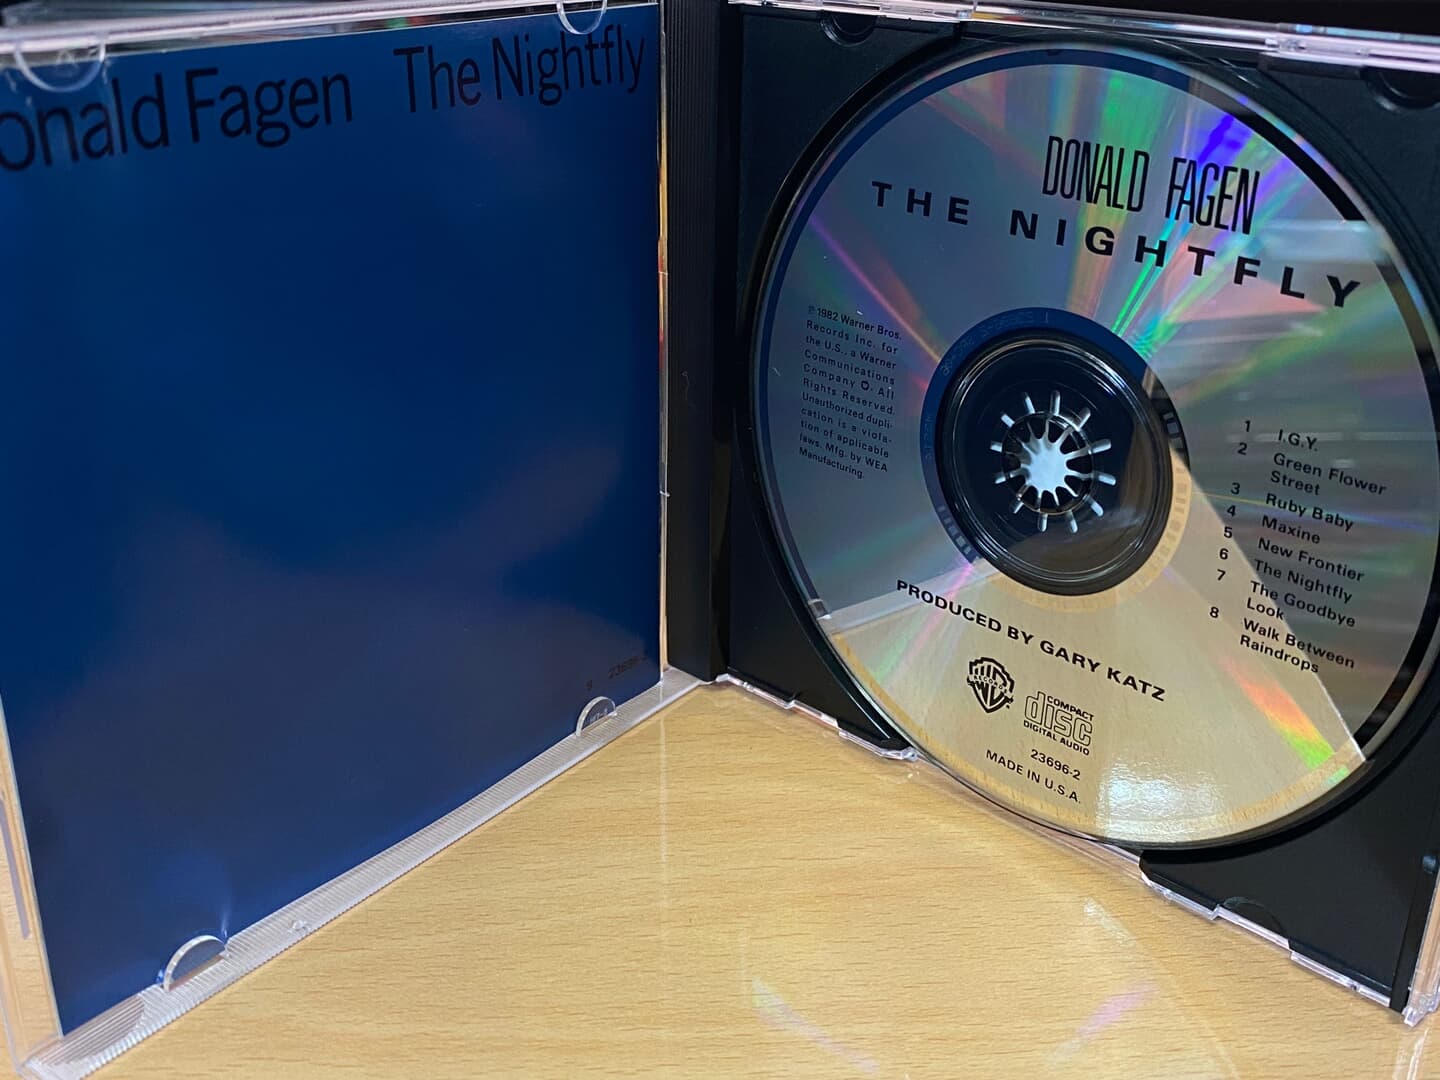 도날드 페이건 - Donald Fagen - The Nightfly [U.S발매]